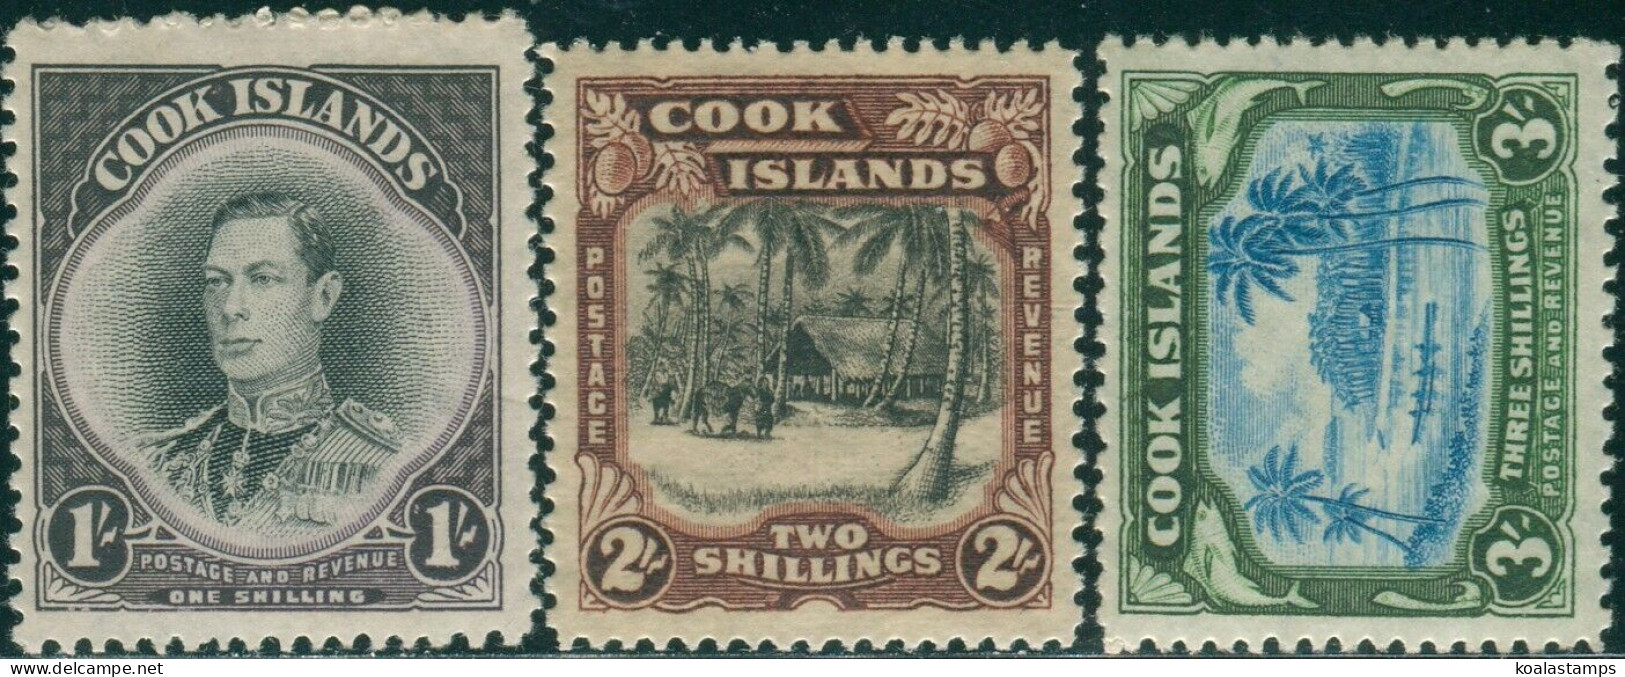 Cook Islands 1938 SG127-129 KGVI Village Canoe Set MLH - Cook